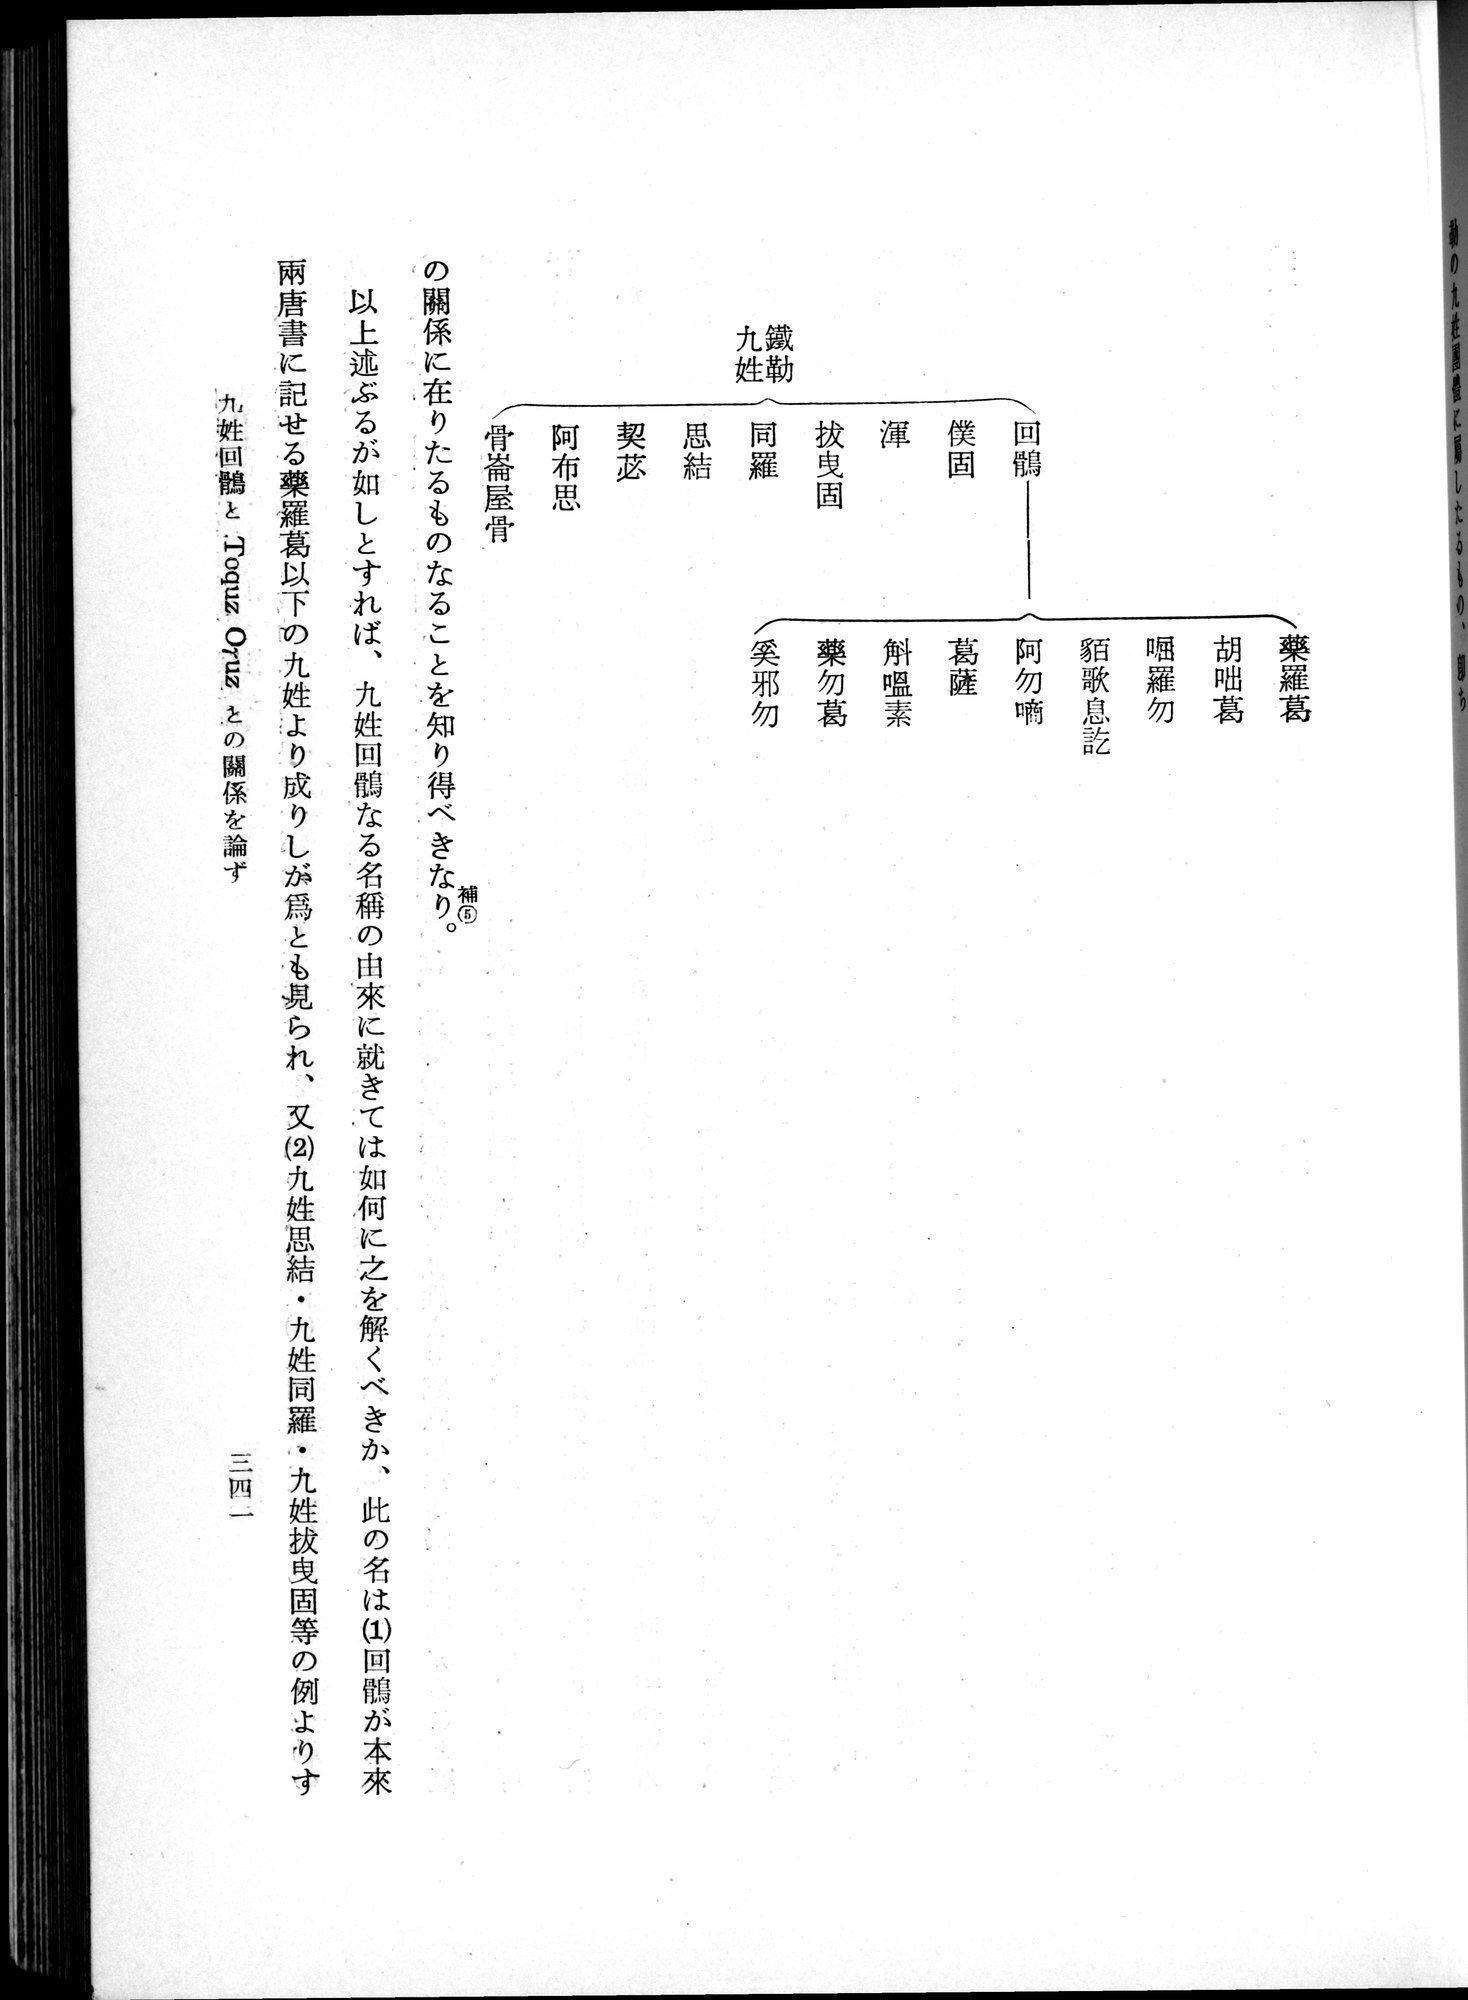 羽田博士史学論文集 : vol.1 / Page 379 (Grayscale High Resolution Image)